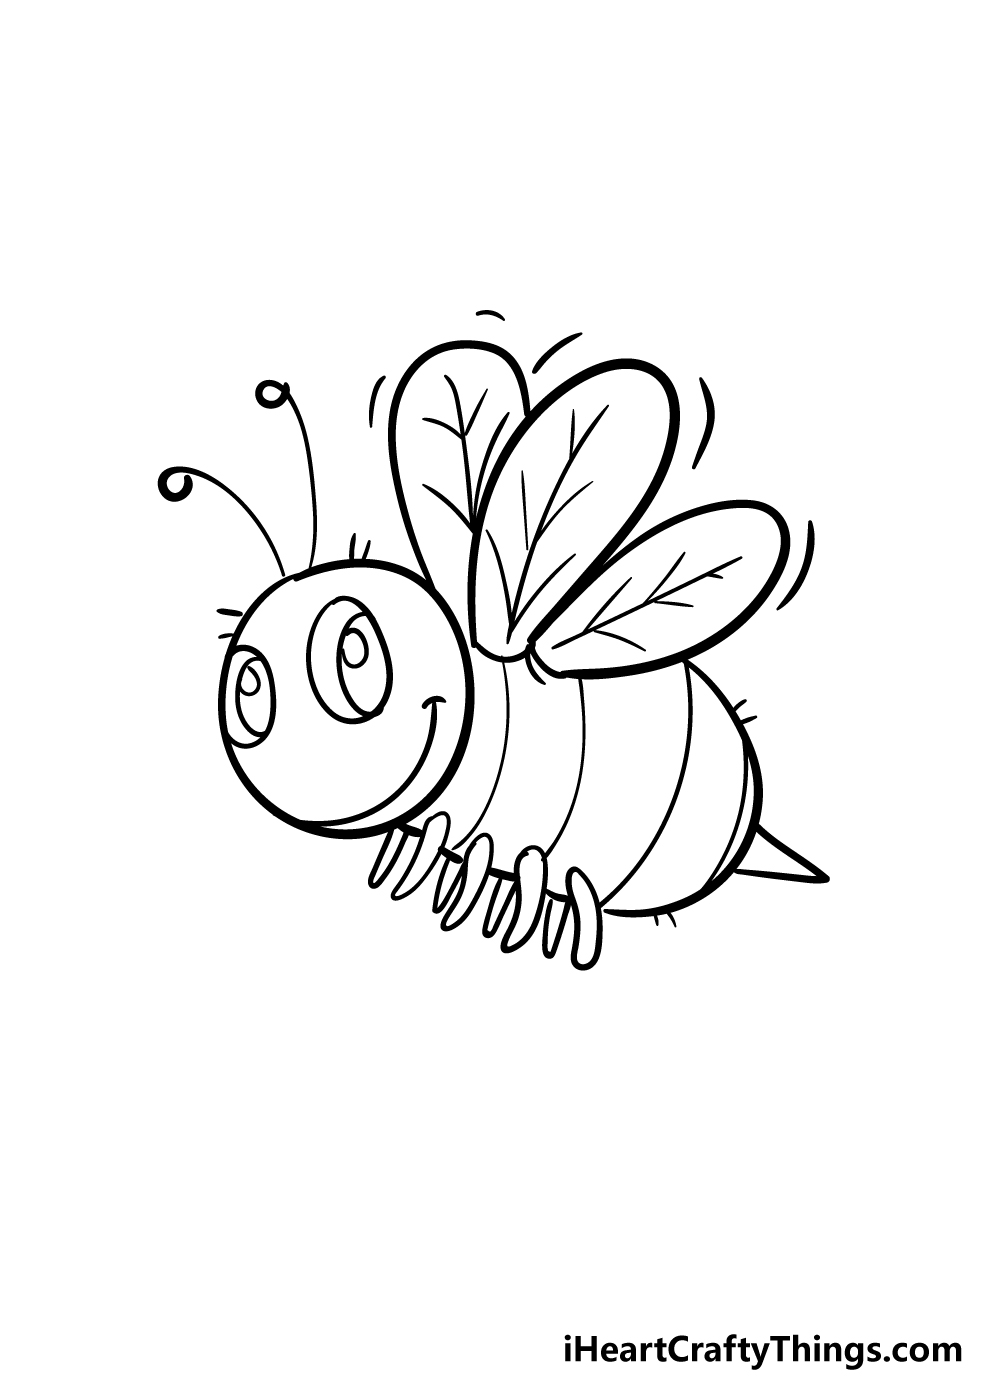 Bee6 - Hướng dẫn chi tiết cách vẽ con ong đơn giản với 7 bước cơ bản